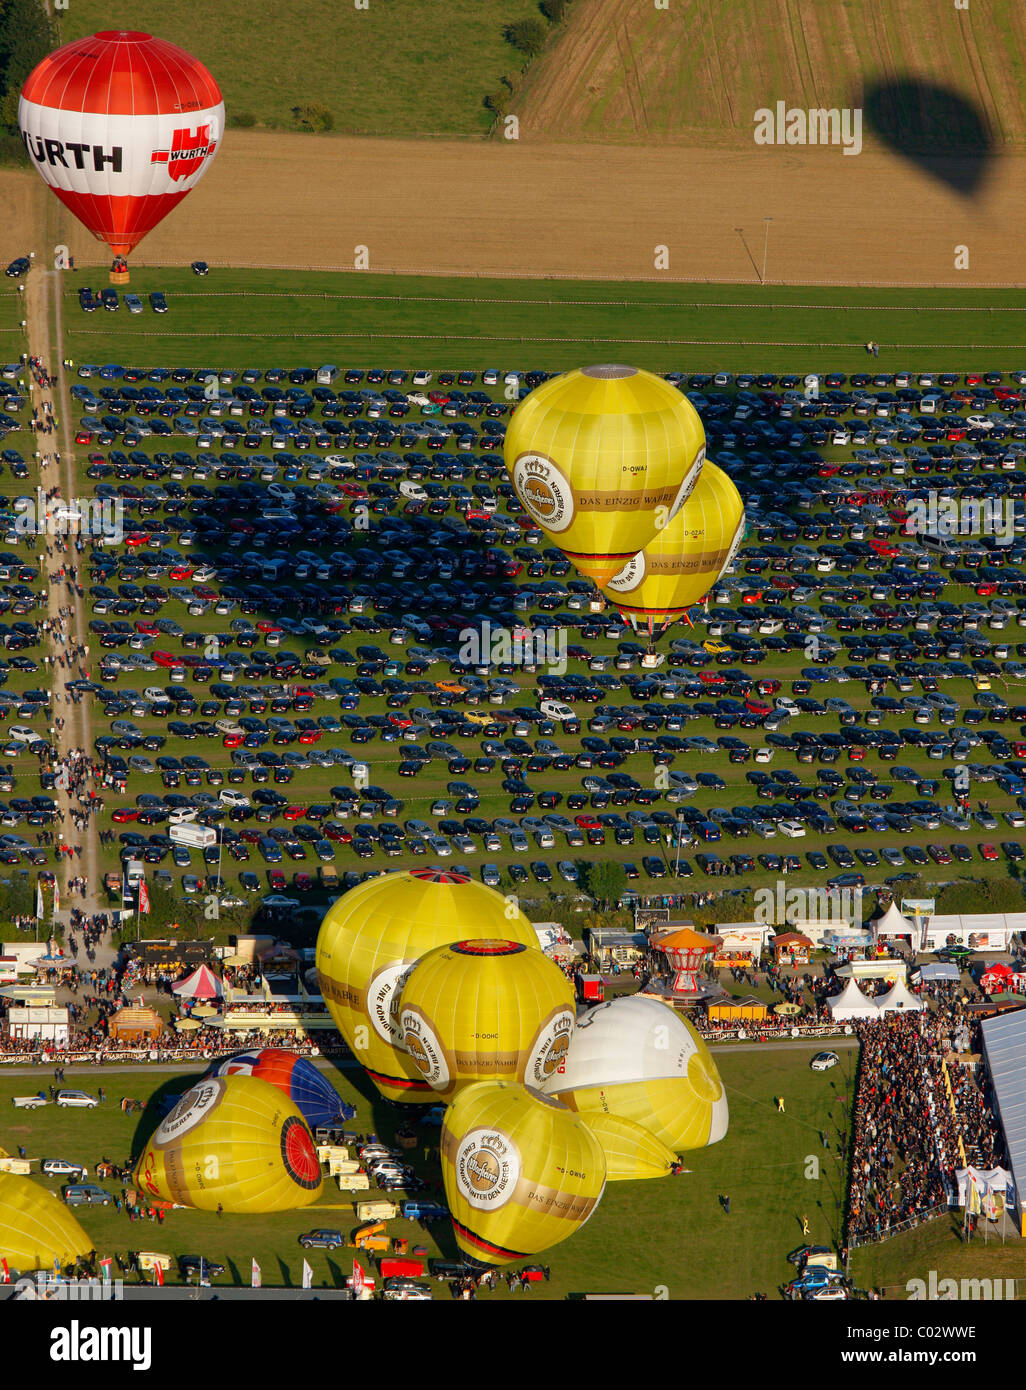 Vista aerea, ventesimo Warsteiner Montgolfiade, aria calda balloon festival con quasi 200 i palloni ad aria calda di ascendere al cielo Foto Stock